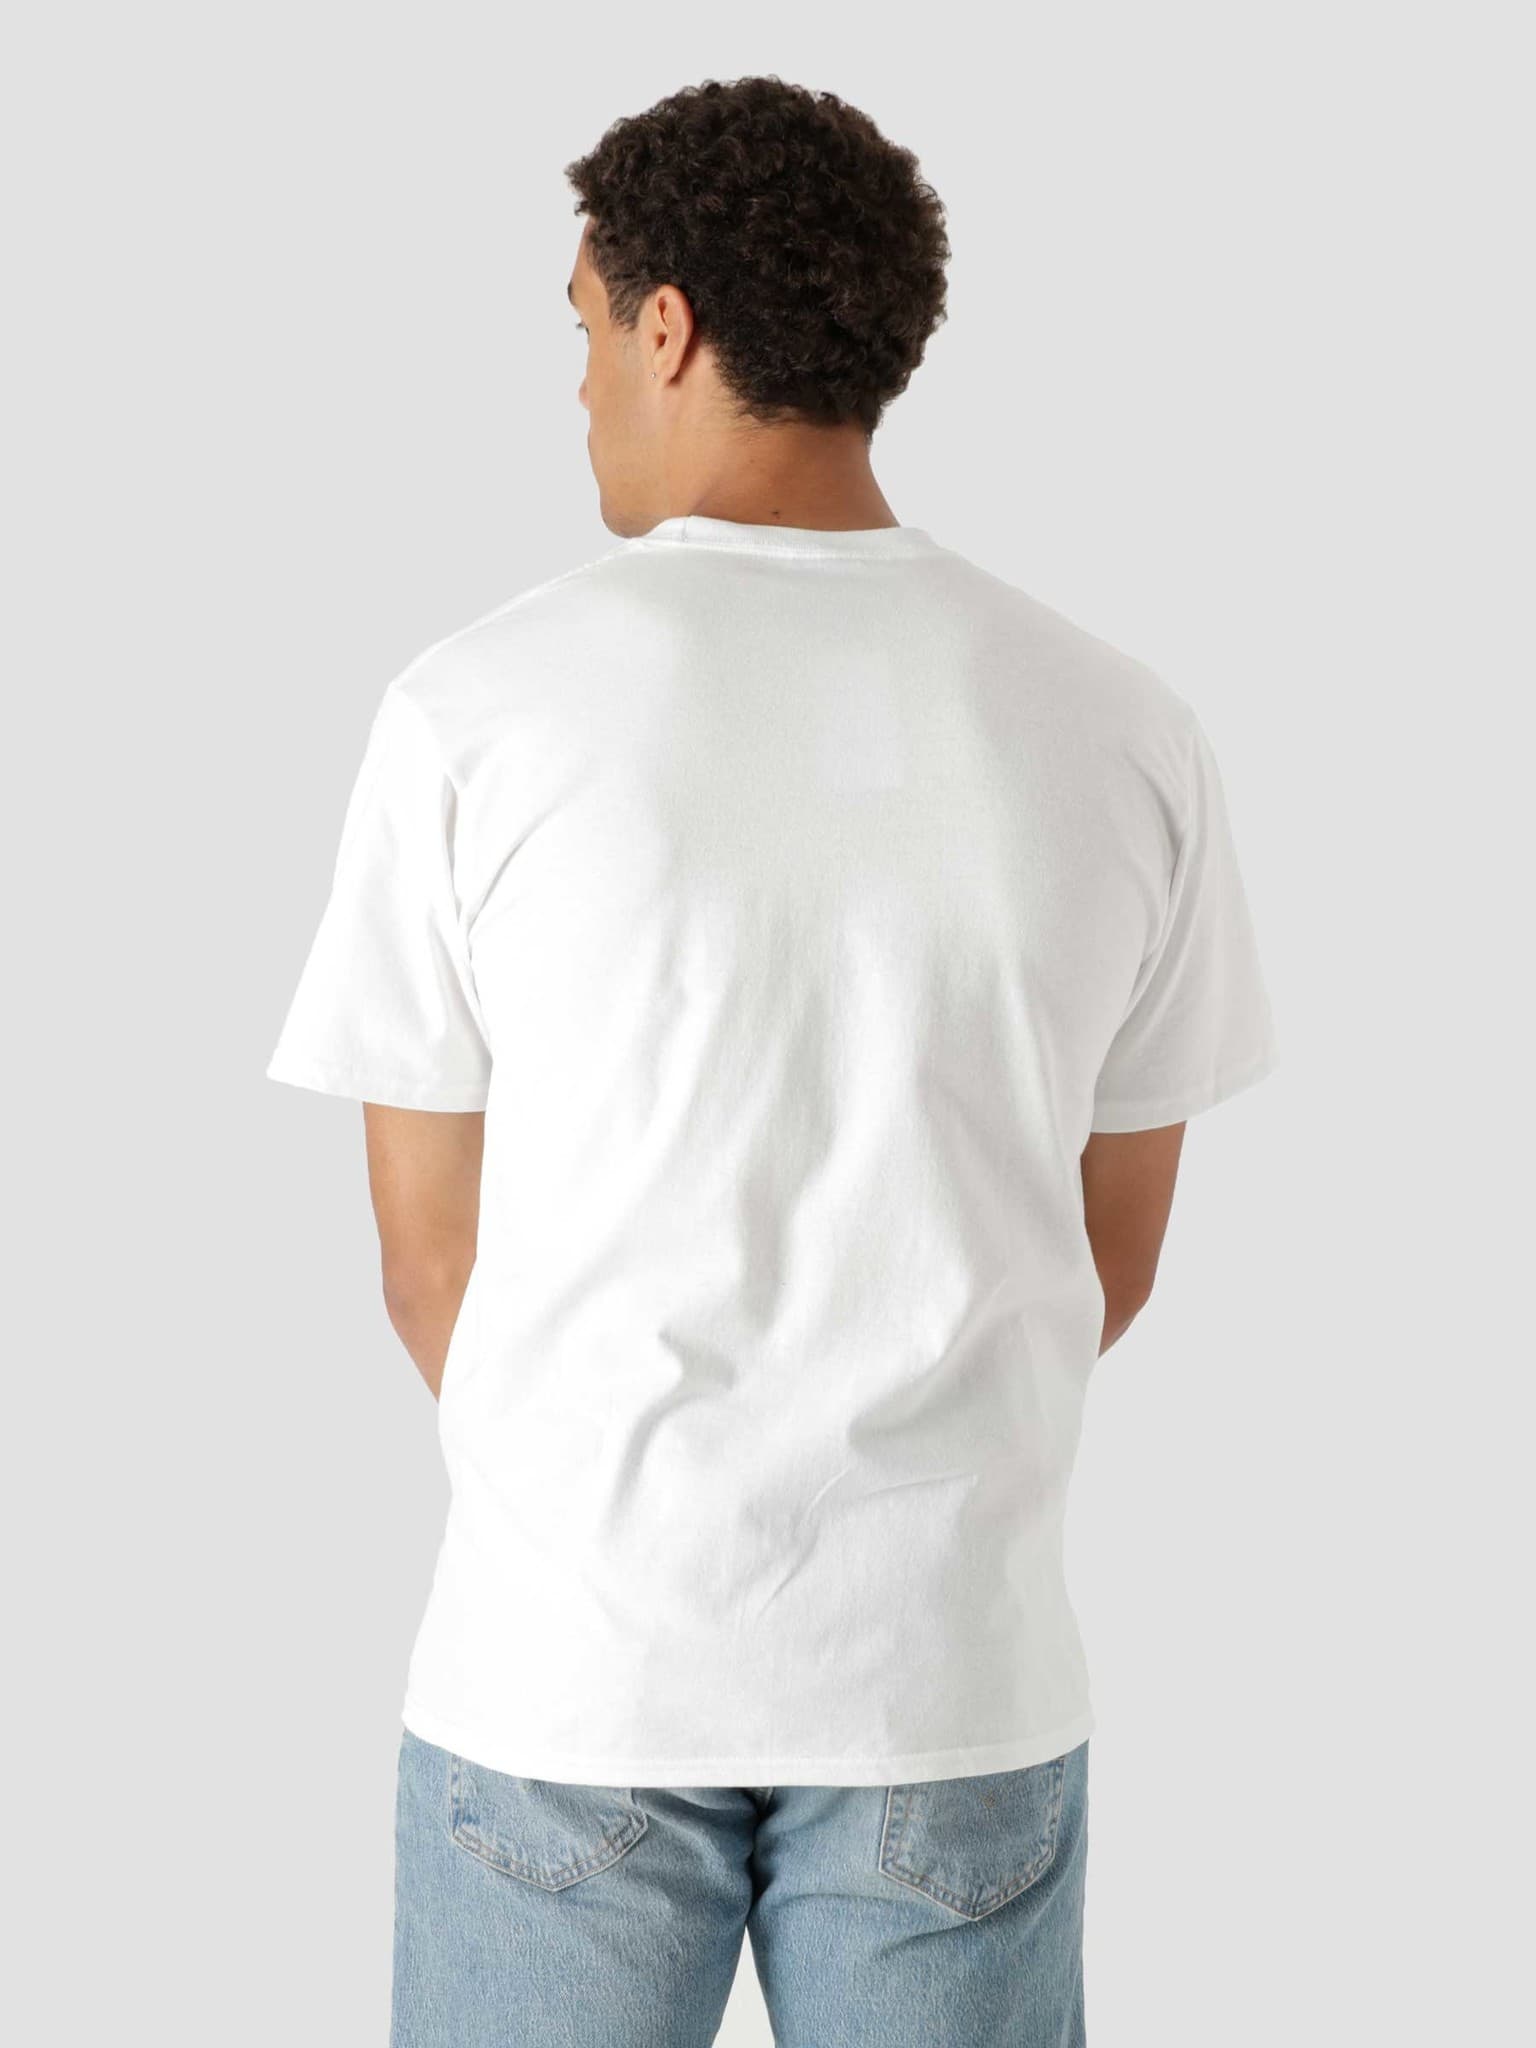 Safe And Sane Shortsleeve T-Shirt White TS01692